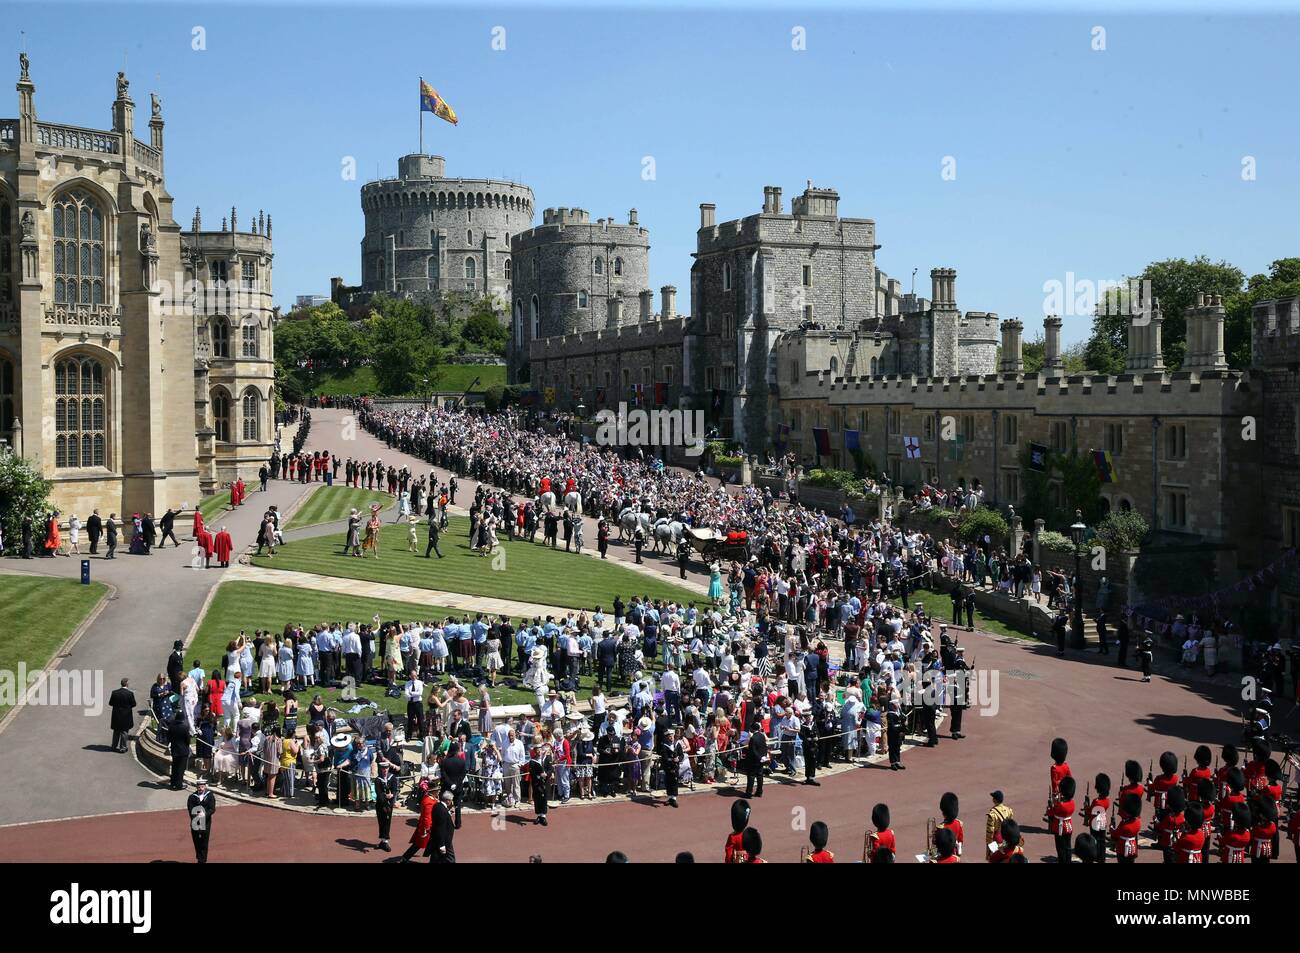 (180519) -- WINDSOR, mayo 19, 2018 (Xinhua) -- Vista del Castillo de Windsor durante la celebraciÃ³n de la boda real del prÃncipe Enrique y Meghan Markle, en Windsor, Reino Unido, el 19 de mayo de 2018.  Cordon Press Stock Photo